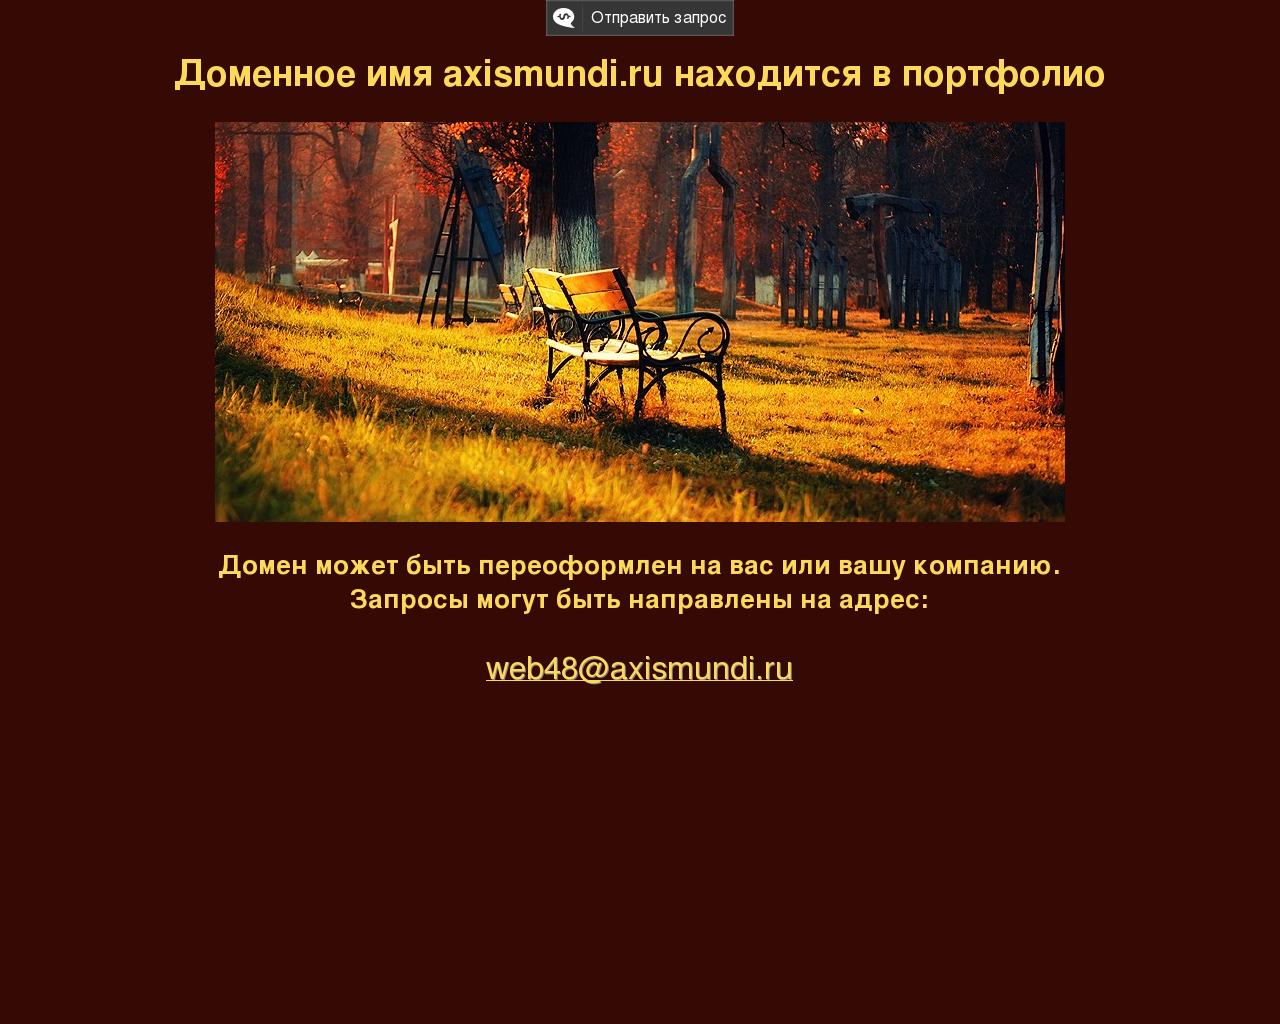 Изображение сайта axismundi.ru в разрешении 1280x1024